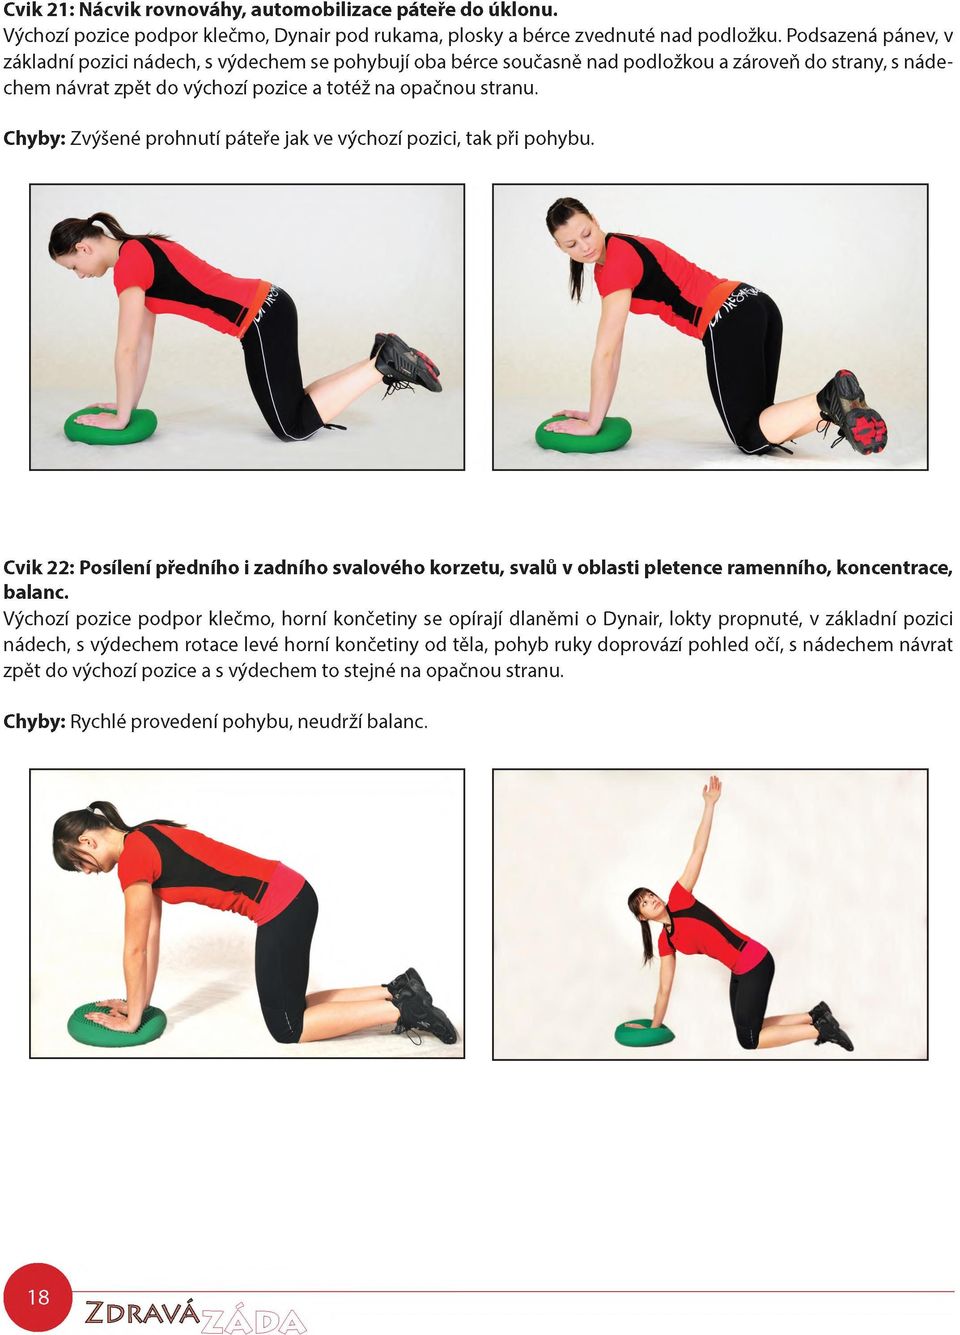 Chyby: Zvýšené prohnutí páteře jak ve výchozí pozici, tak při pohybu. Cvik 22: Posílení předního i zadního svalového korzetu, svalů v oblasti pletence ramenního, koncentrace, balanc.